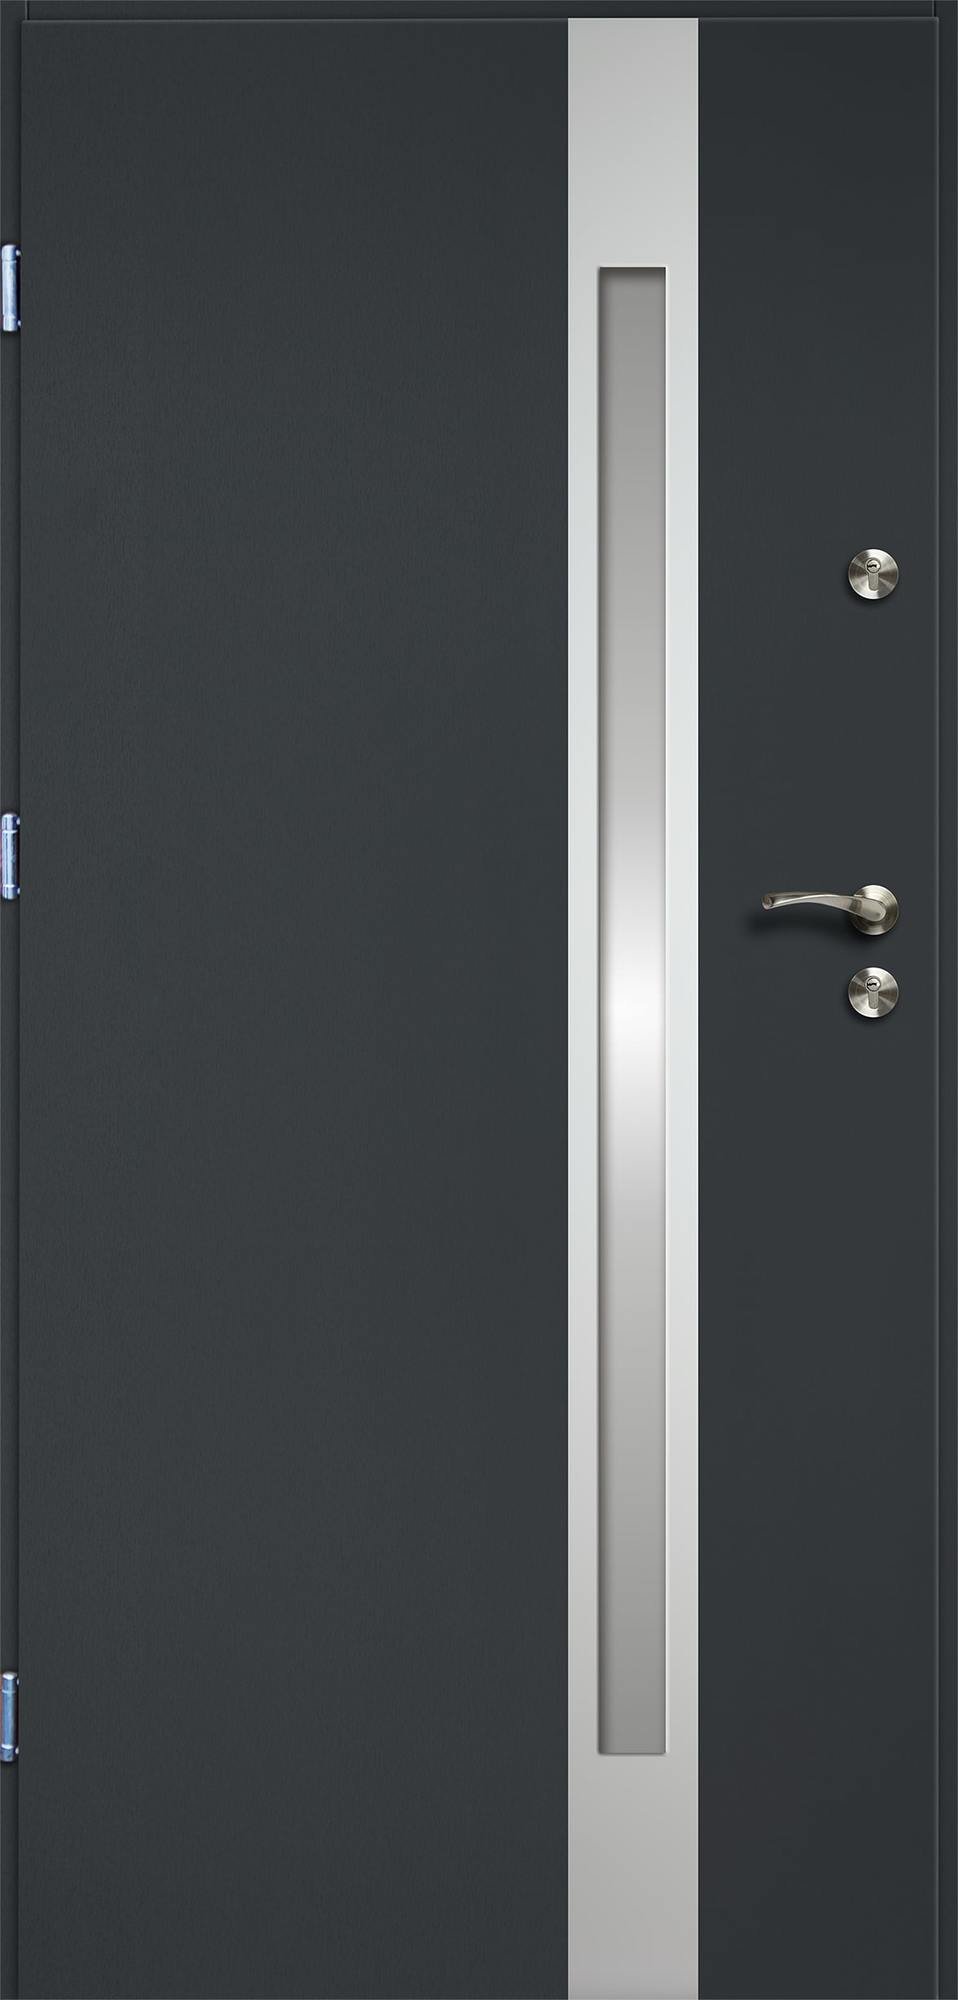 Lauko durys RADEX VERTE II, antracito sp., 1000 x 2070 mm, kairė